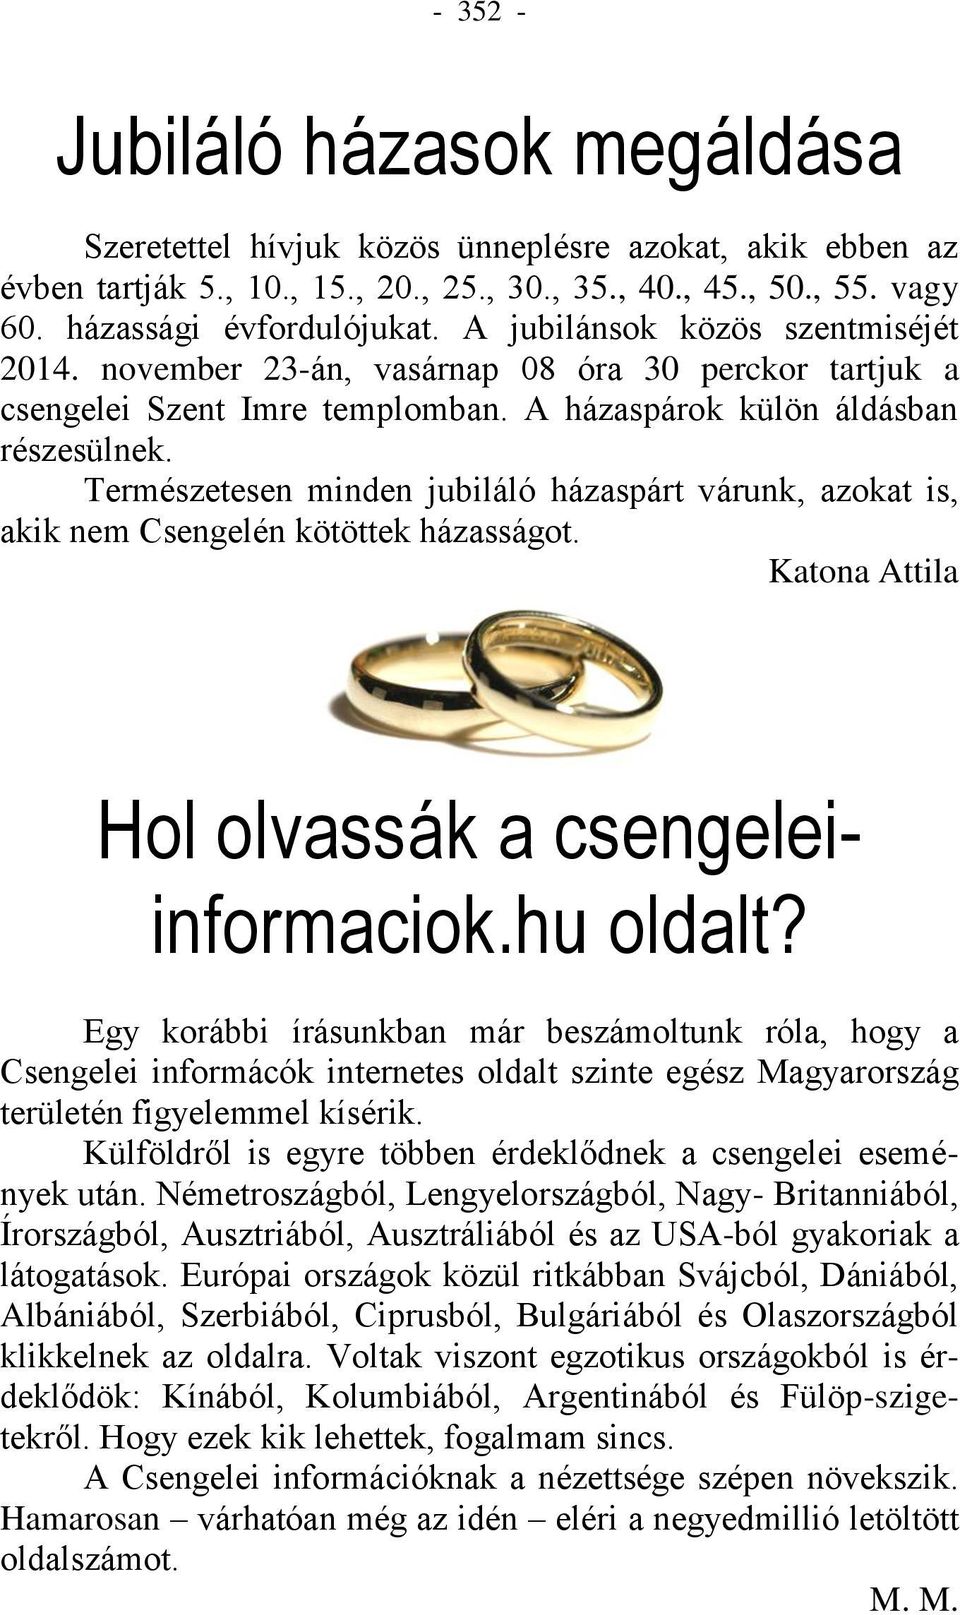 Természetesen minden jubiláló házaspárt várunk, azokat is, akik nem Csengelén kötöttek házasságot. Katona Attila Hol olvassák a csengeleiinformaciok.hu oldalt?